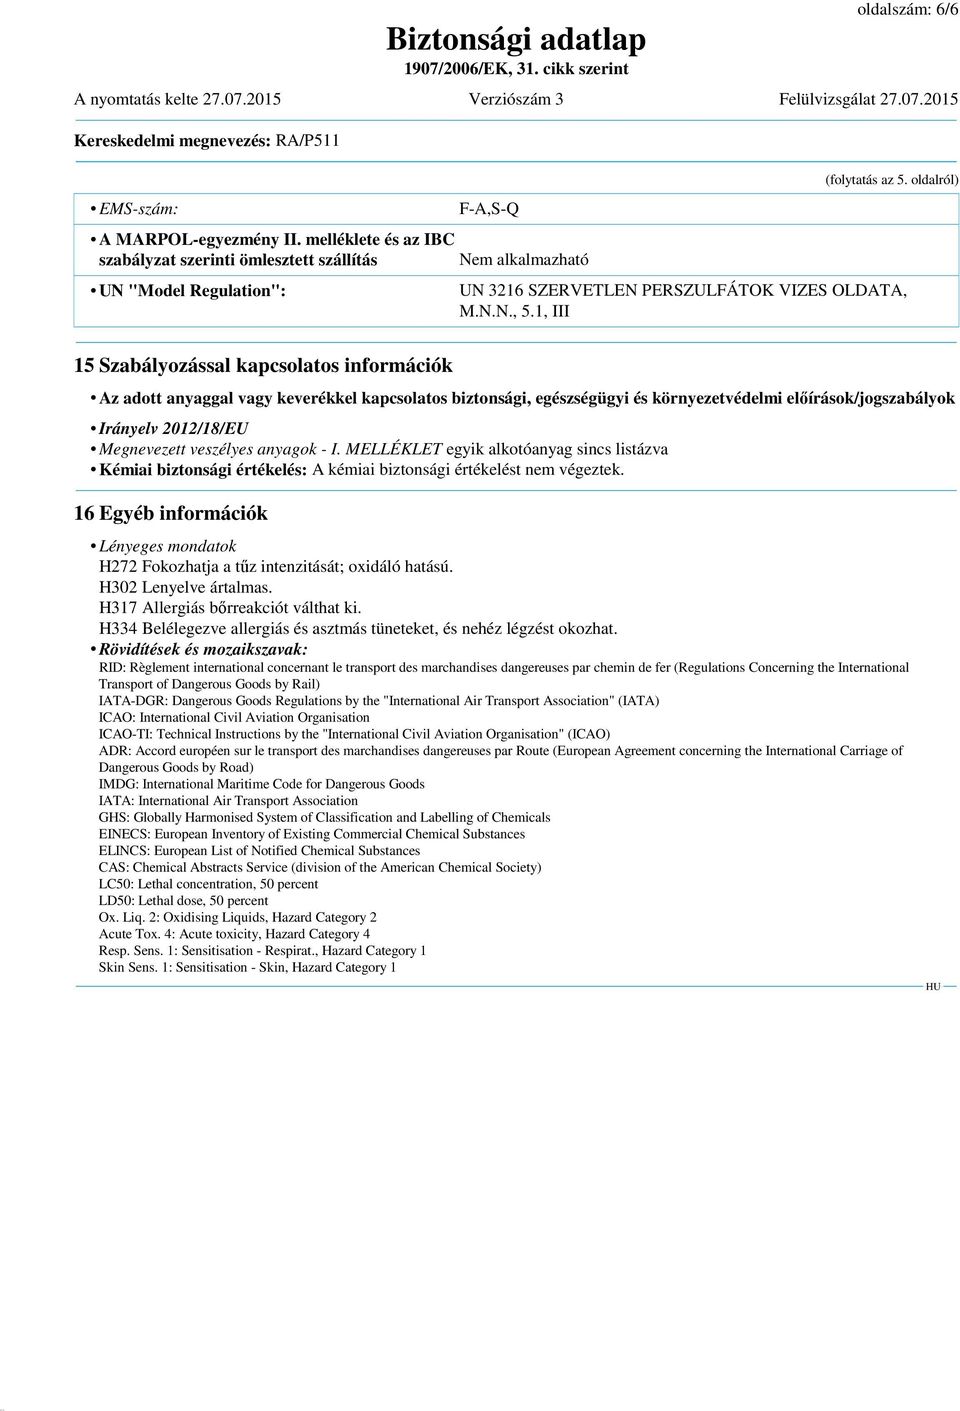 1, III 15 Szabályozással kapcsolatos információk Az adott anyaggal vagy keverékkel kapcsolatos biztonsági, egészségügyi és környezetvédelmi előírások/jogszabályok Irányelv 2012/18/EU Megnevezett